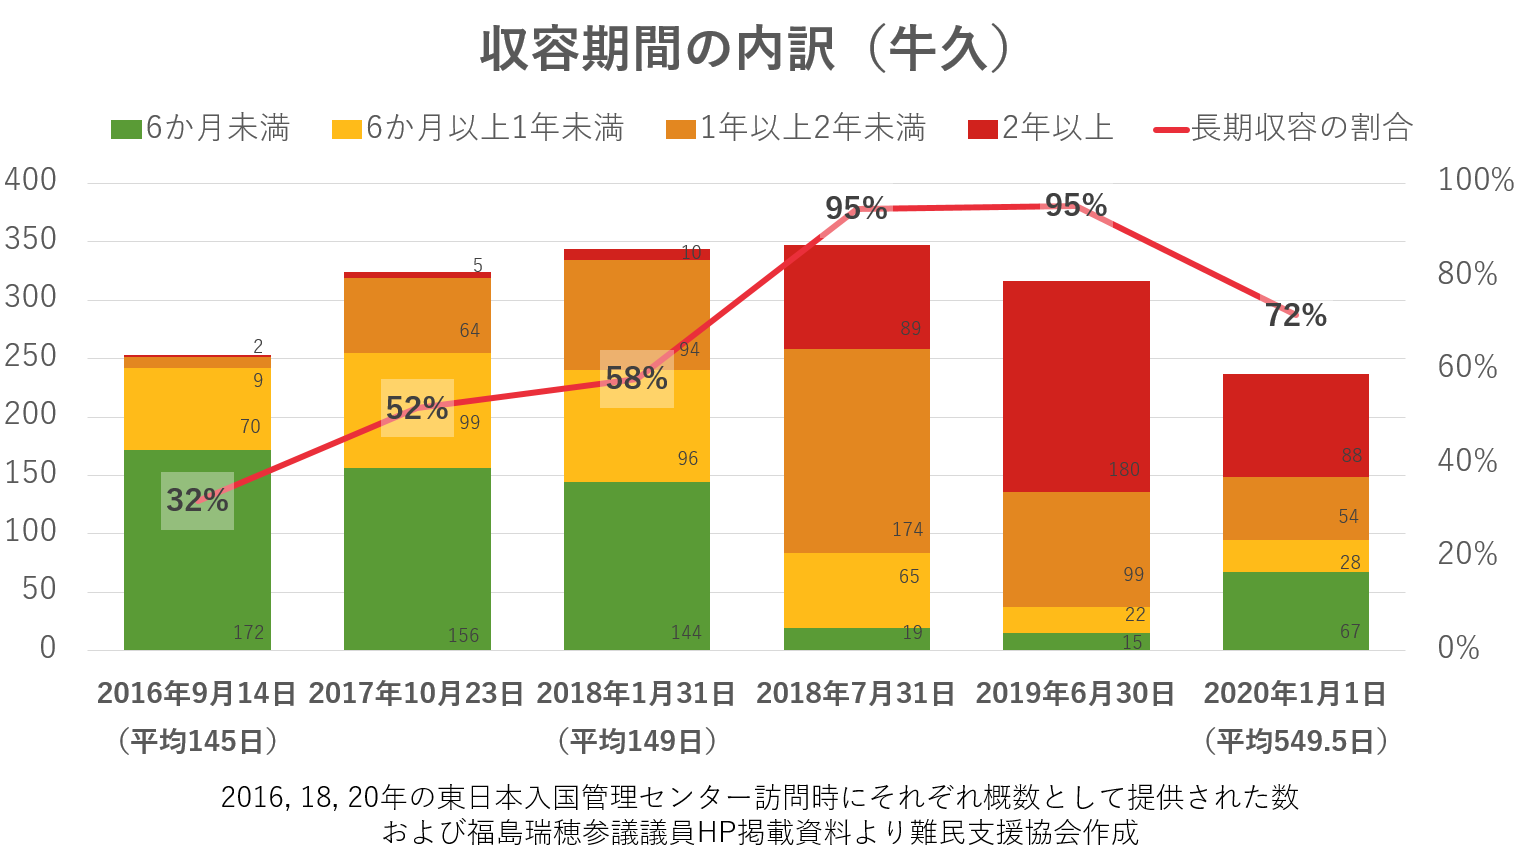 長期収容（6ヶ月以上）の割合＝2016/9/14：32％（平均145日）、2017/10/23：52％、2018/1/31：58％（平均149日）、2018/7/31：95%、2019/6/30：95%、2020/1/1：72%（平均549.5日）  * 2016, 18, 20年の東日本入国管理センター訪問時にそれぞれ概数として提供された数および福島瑞穂参議議員HP掲載資料より難民支援協会作成